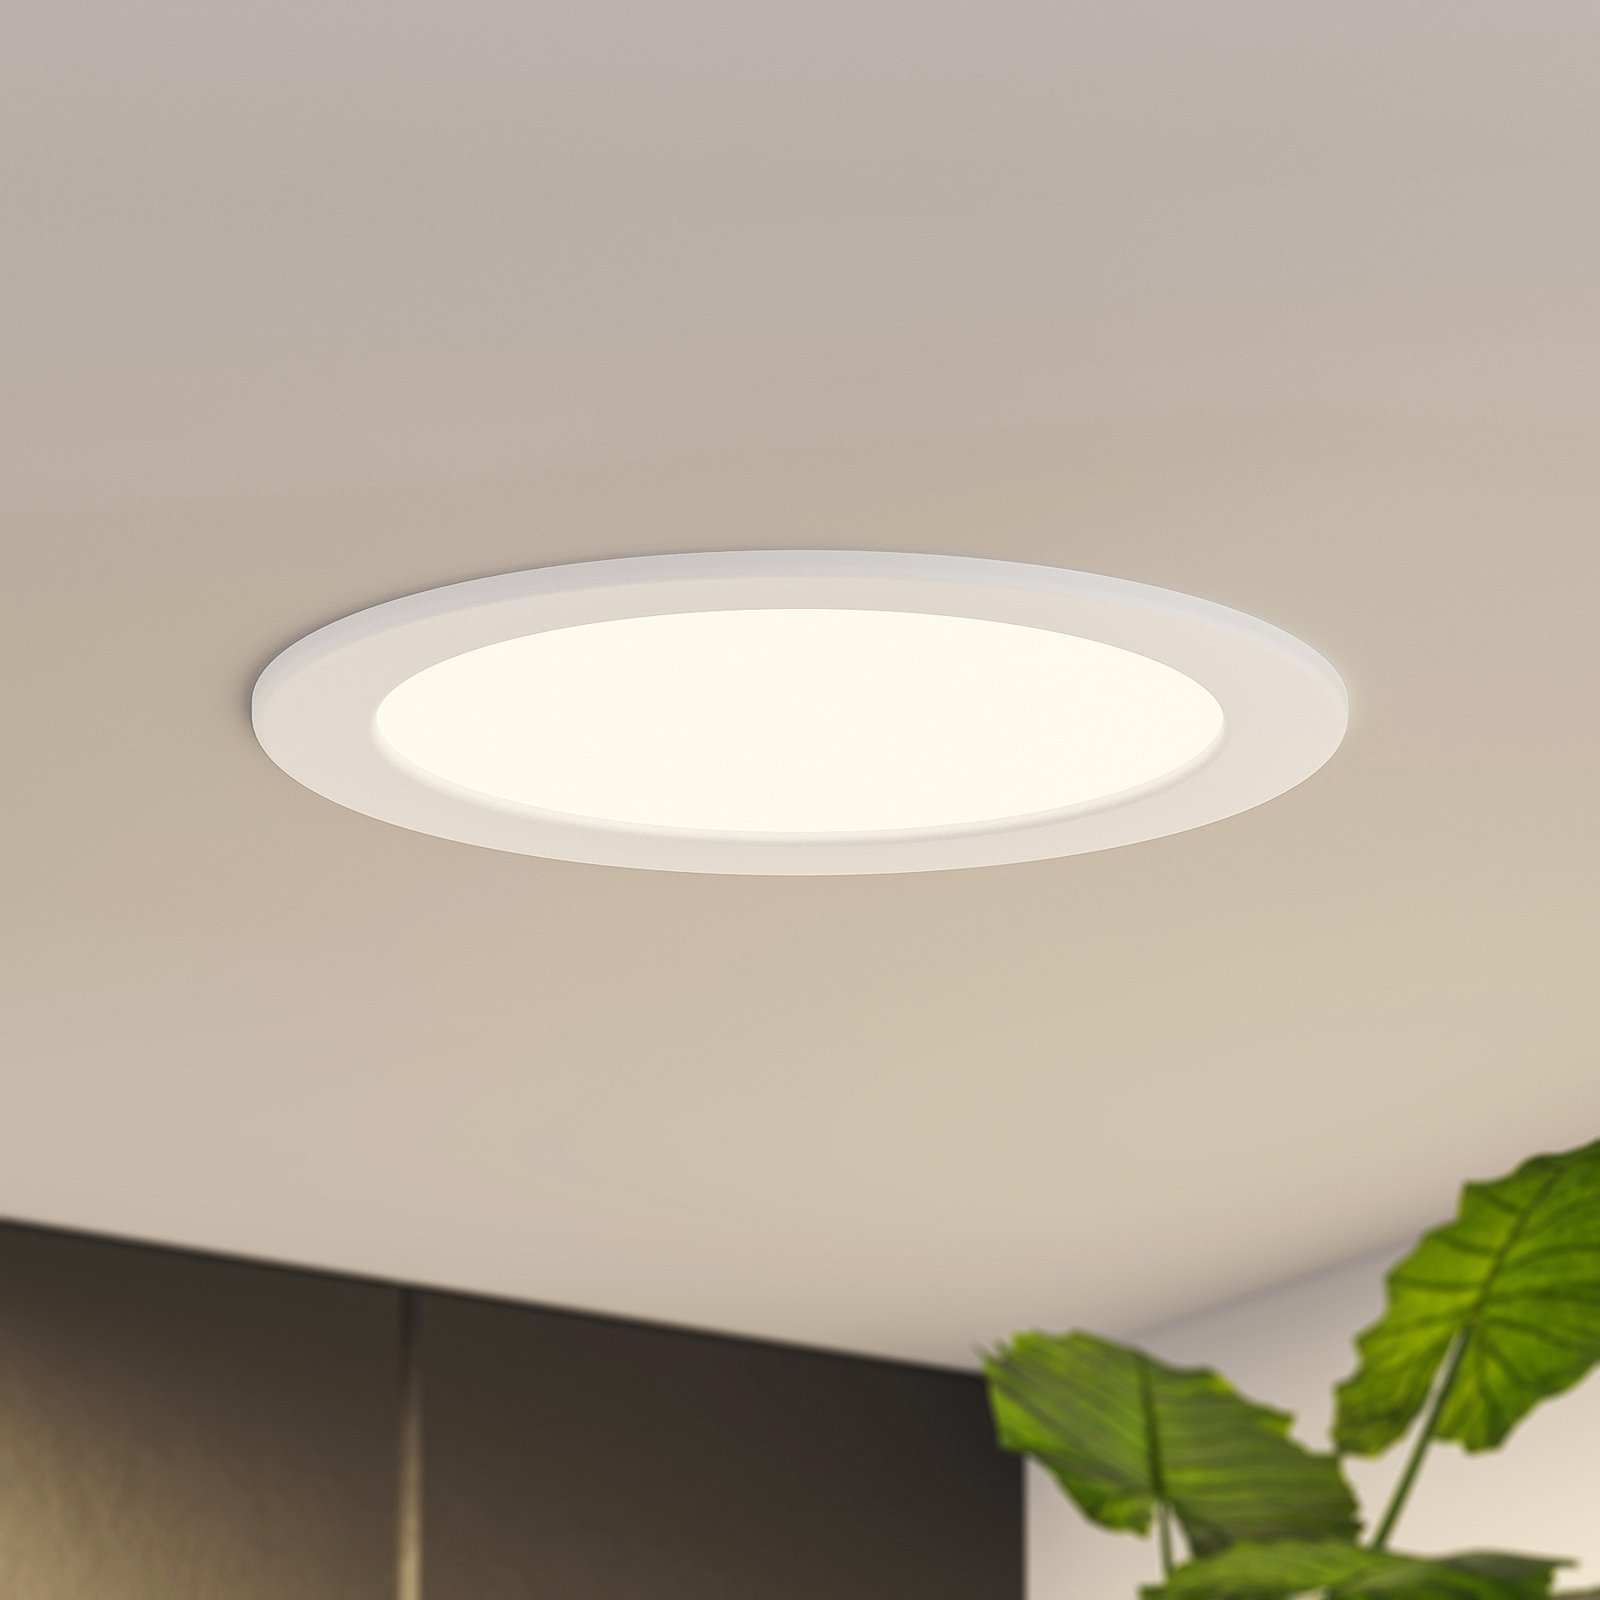 Prios Cadance LED recessed light, white, 22 cm